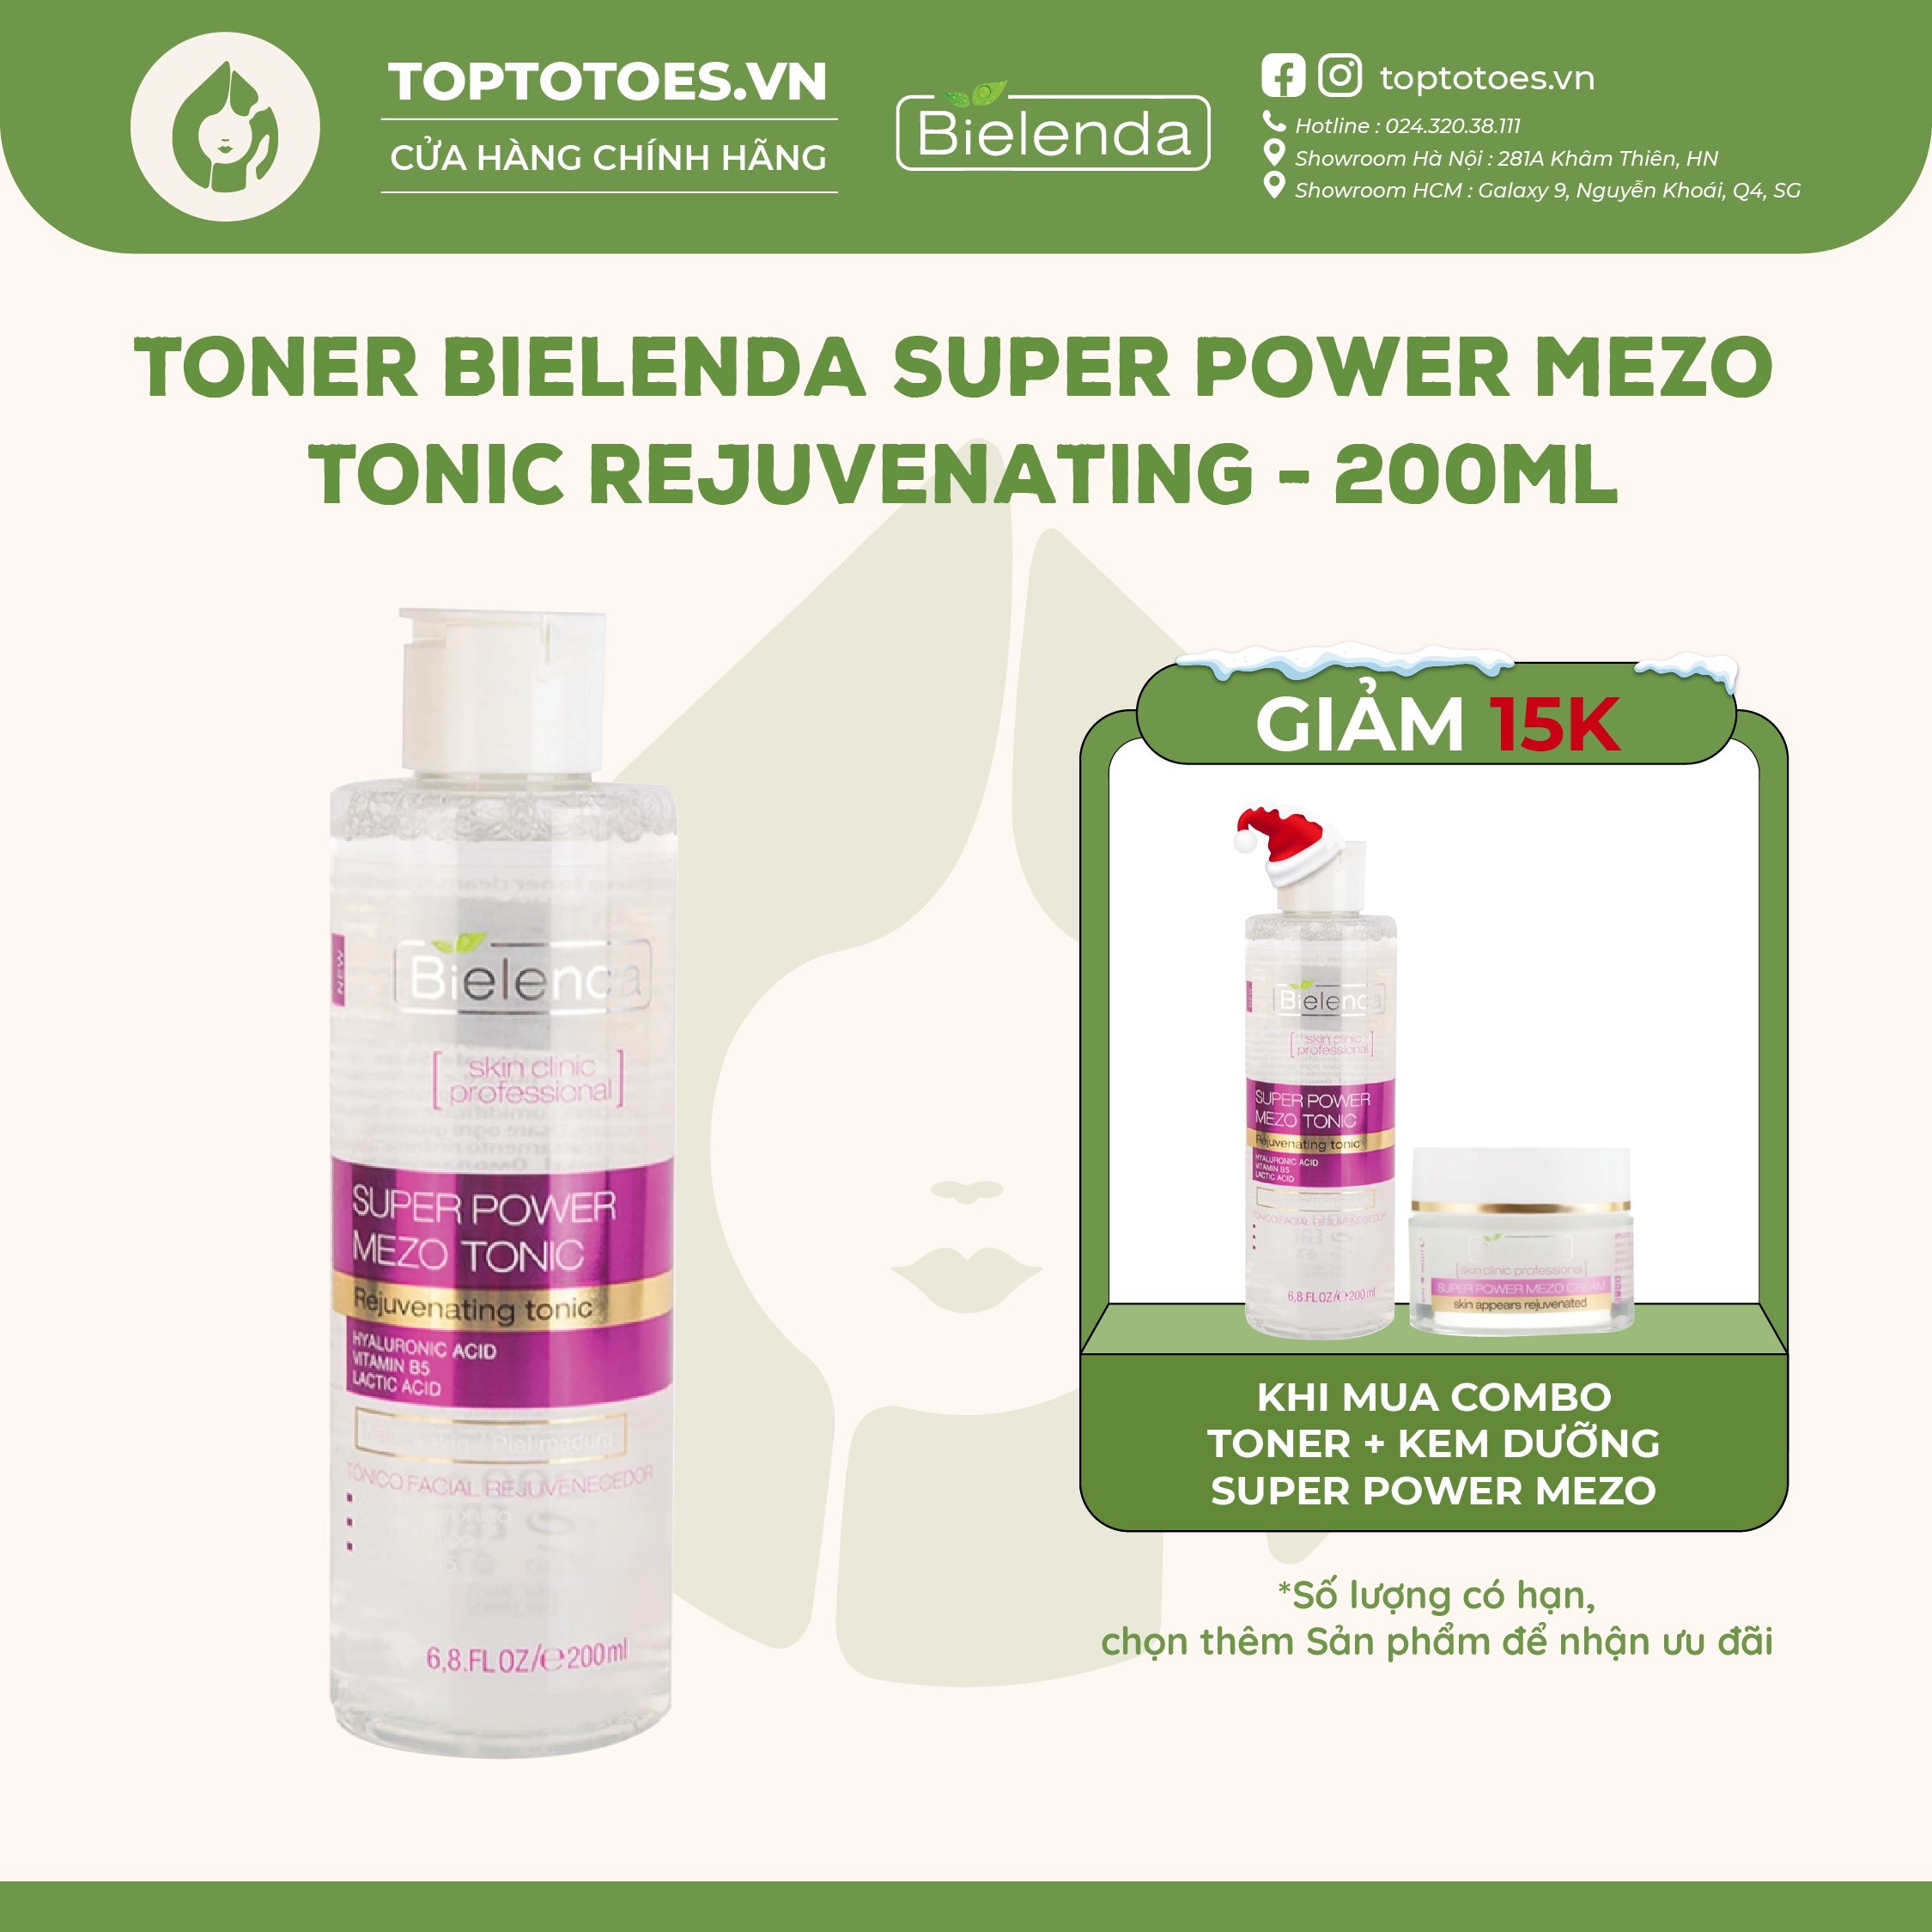 Toner & Kem dưỡng Bielenda Rejuvenating Mezo Skin Clinic dưỡng ẩm sâu phục hồi & trẻ hoá da